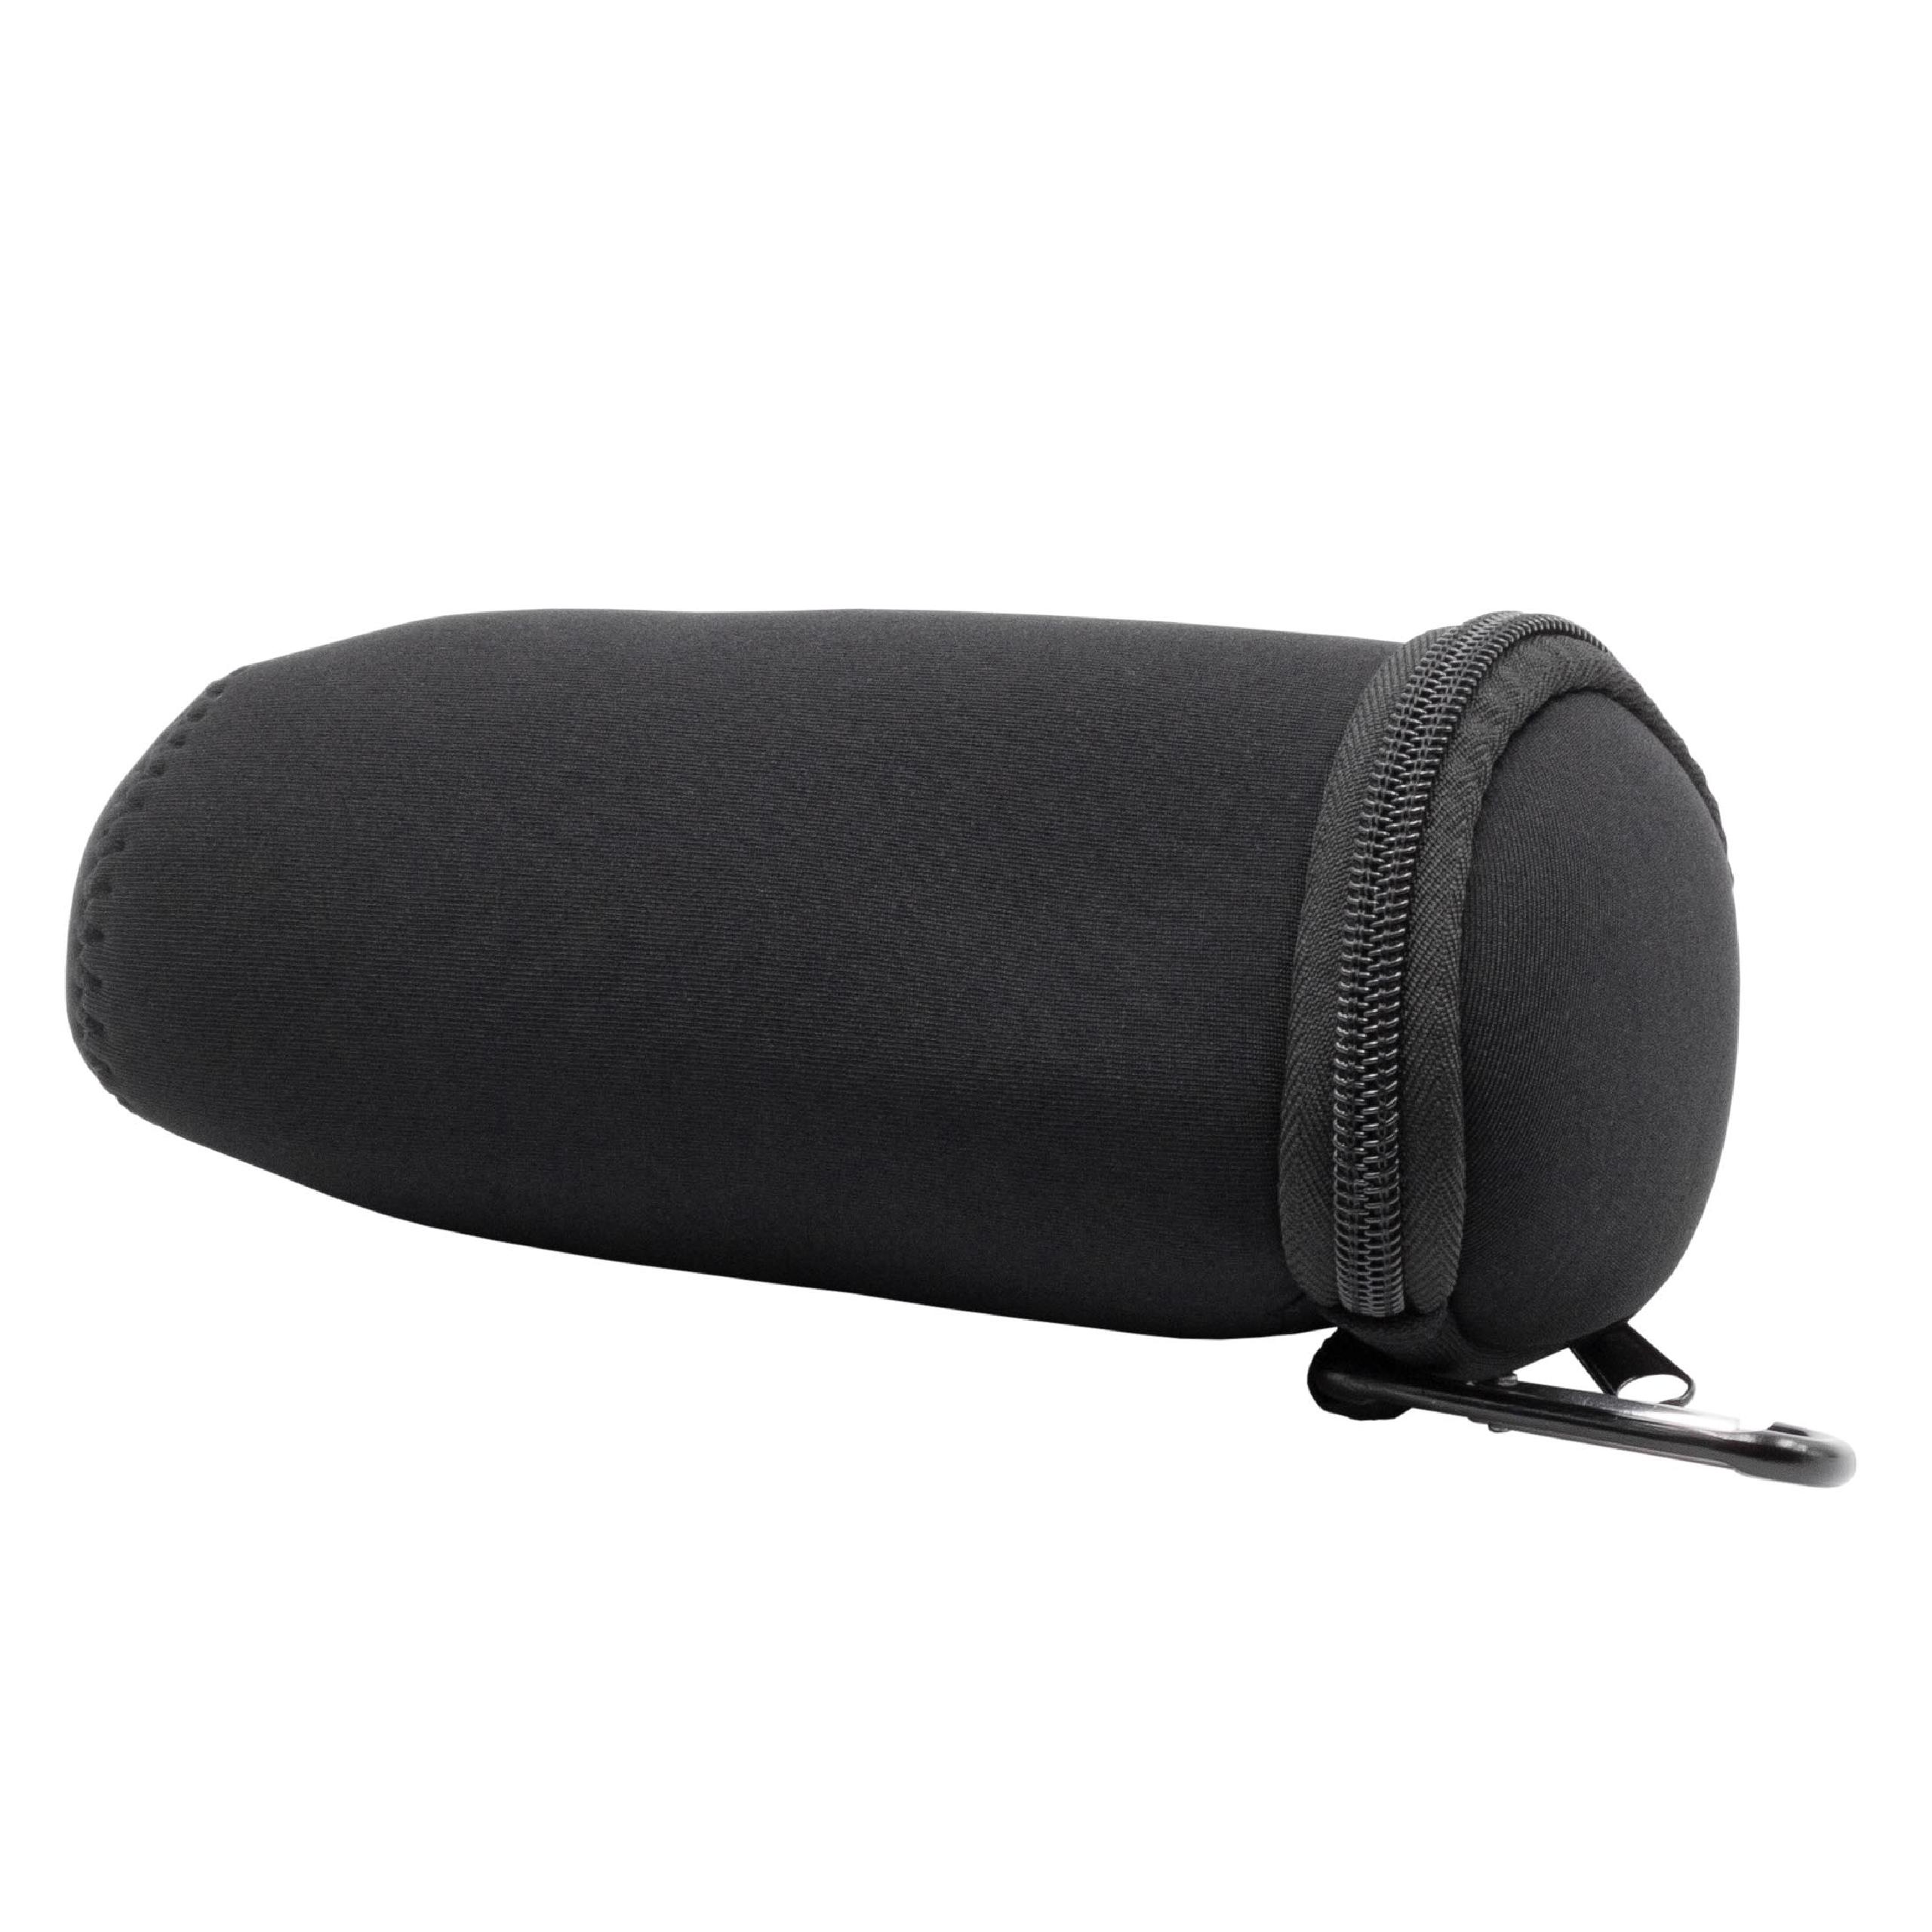 Tasche passend für Bose Soundlink Revolve Lautsprecher - Nylon, Schwarz